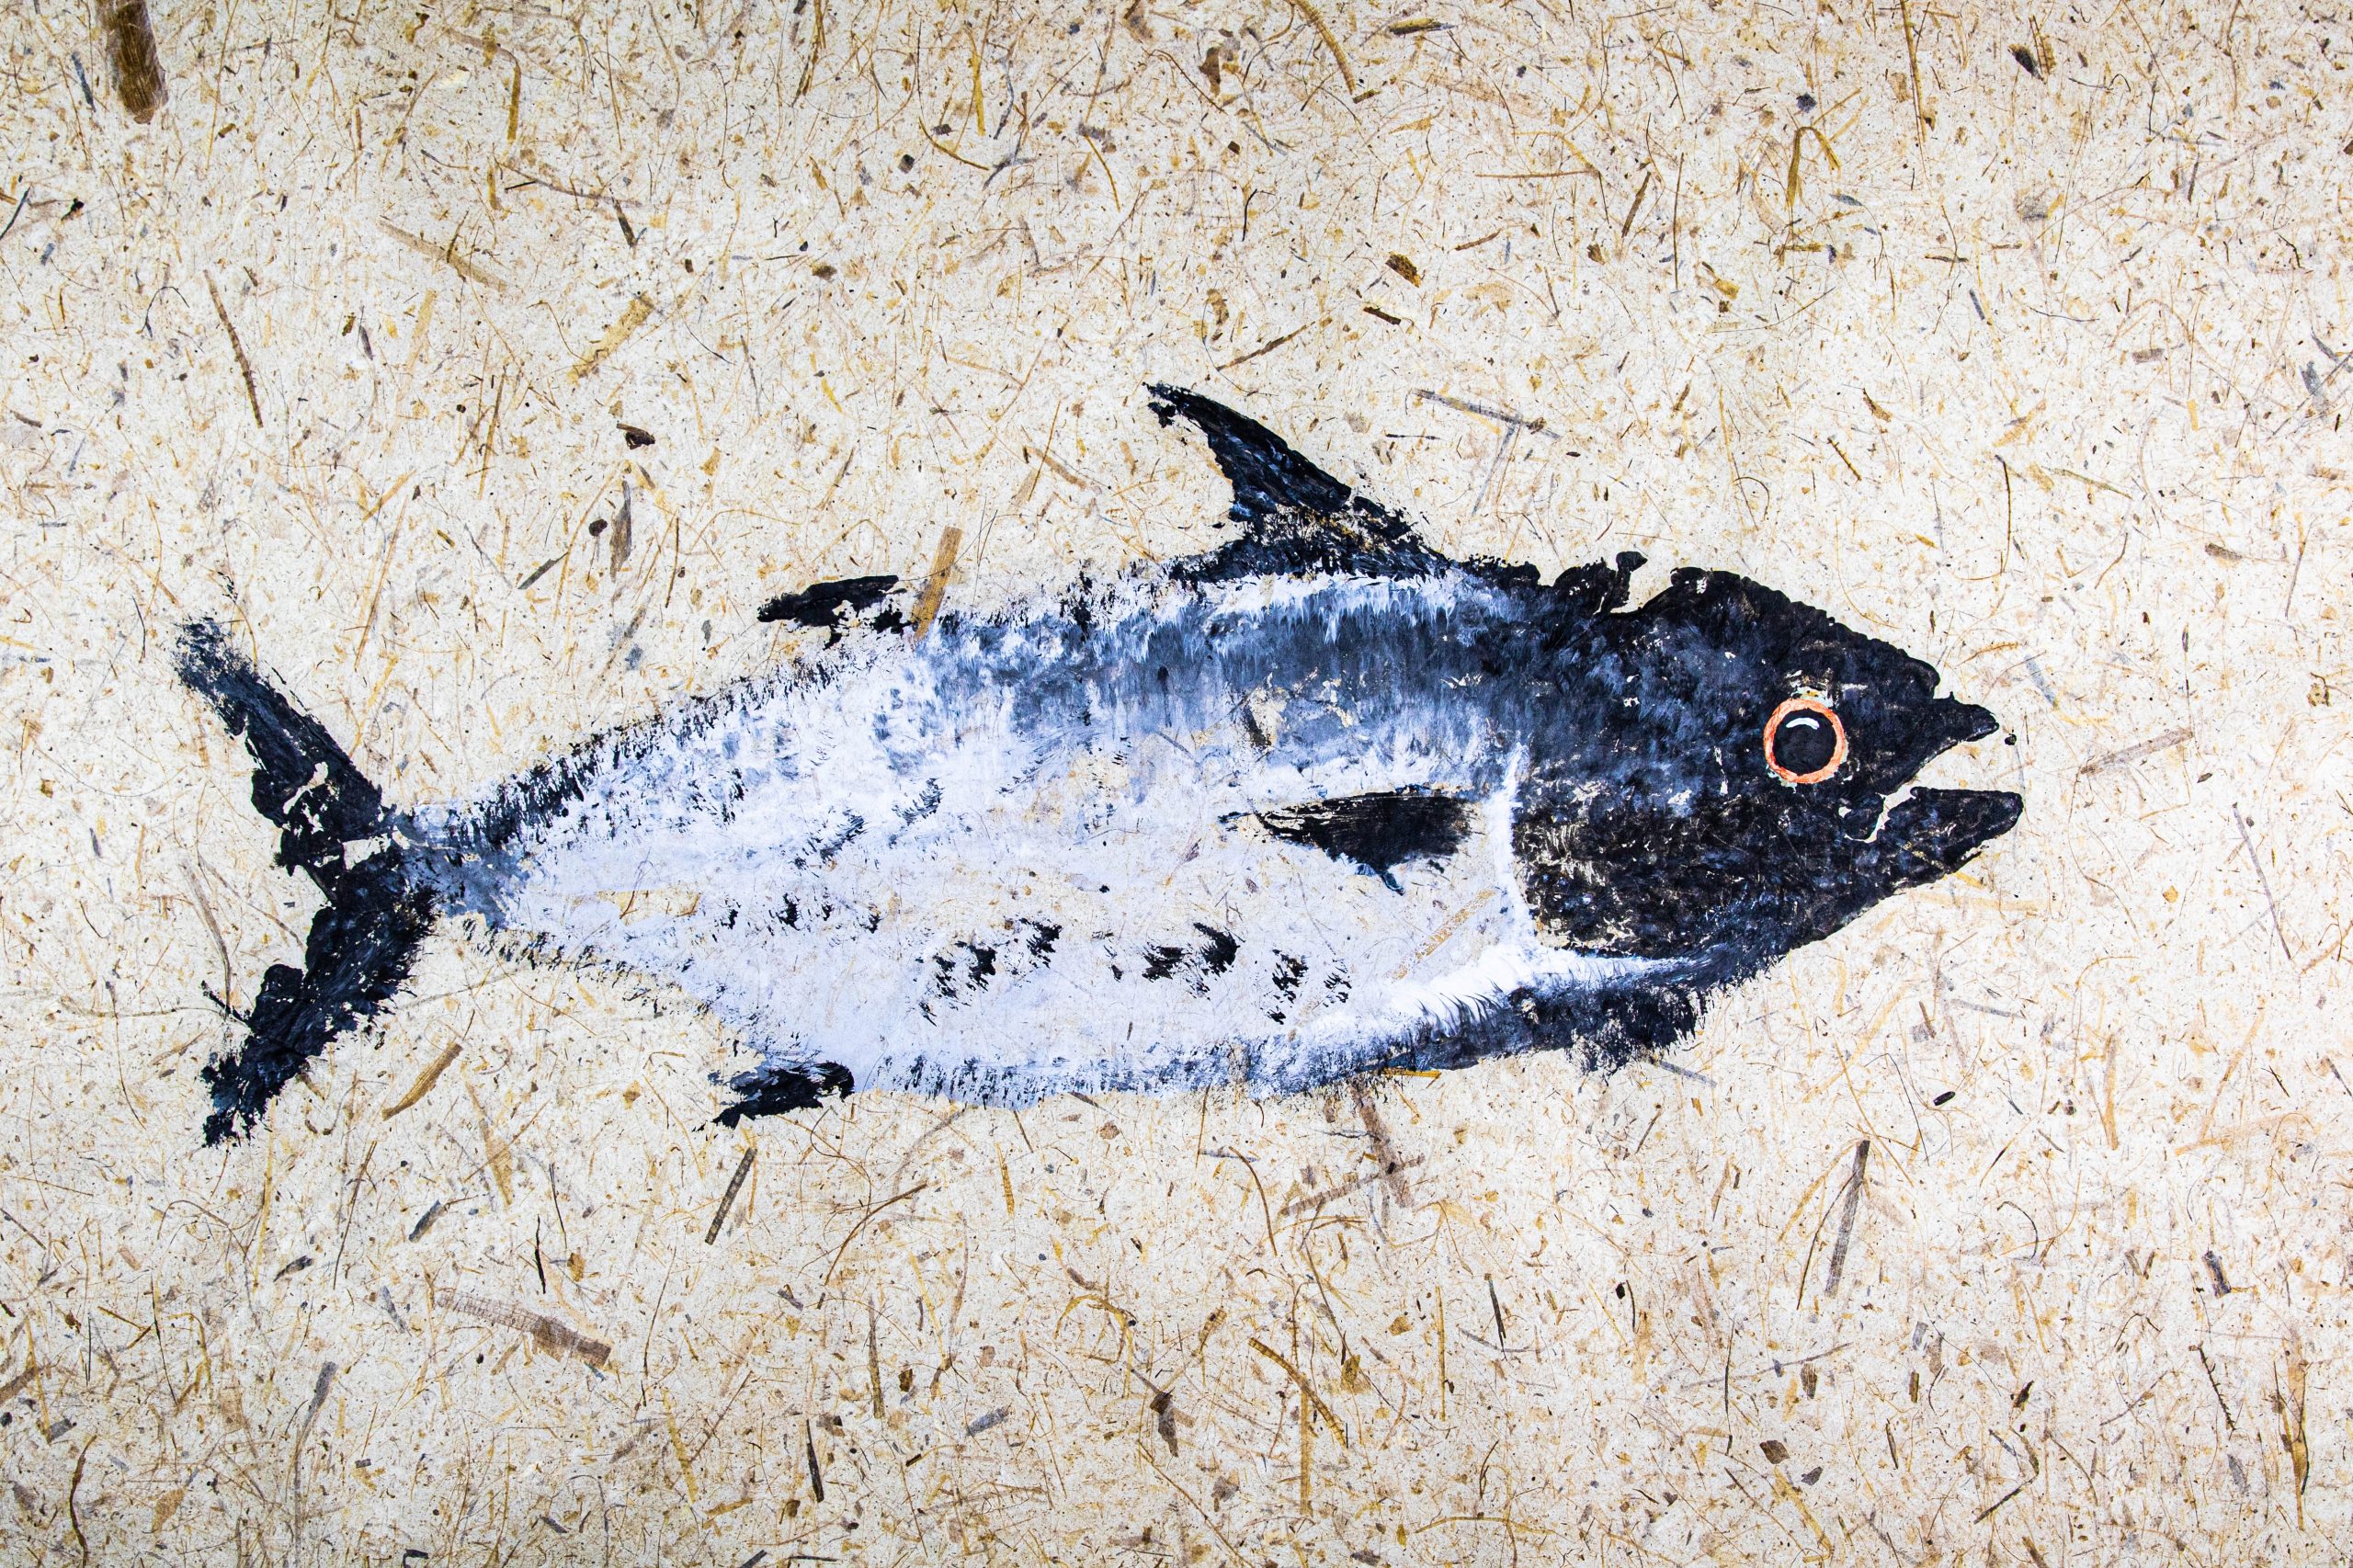 gyotaku saltwater fish prints on japanese paper